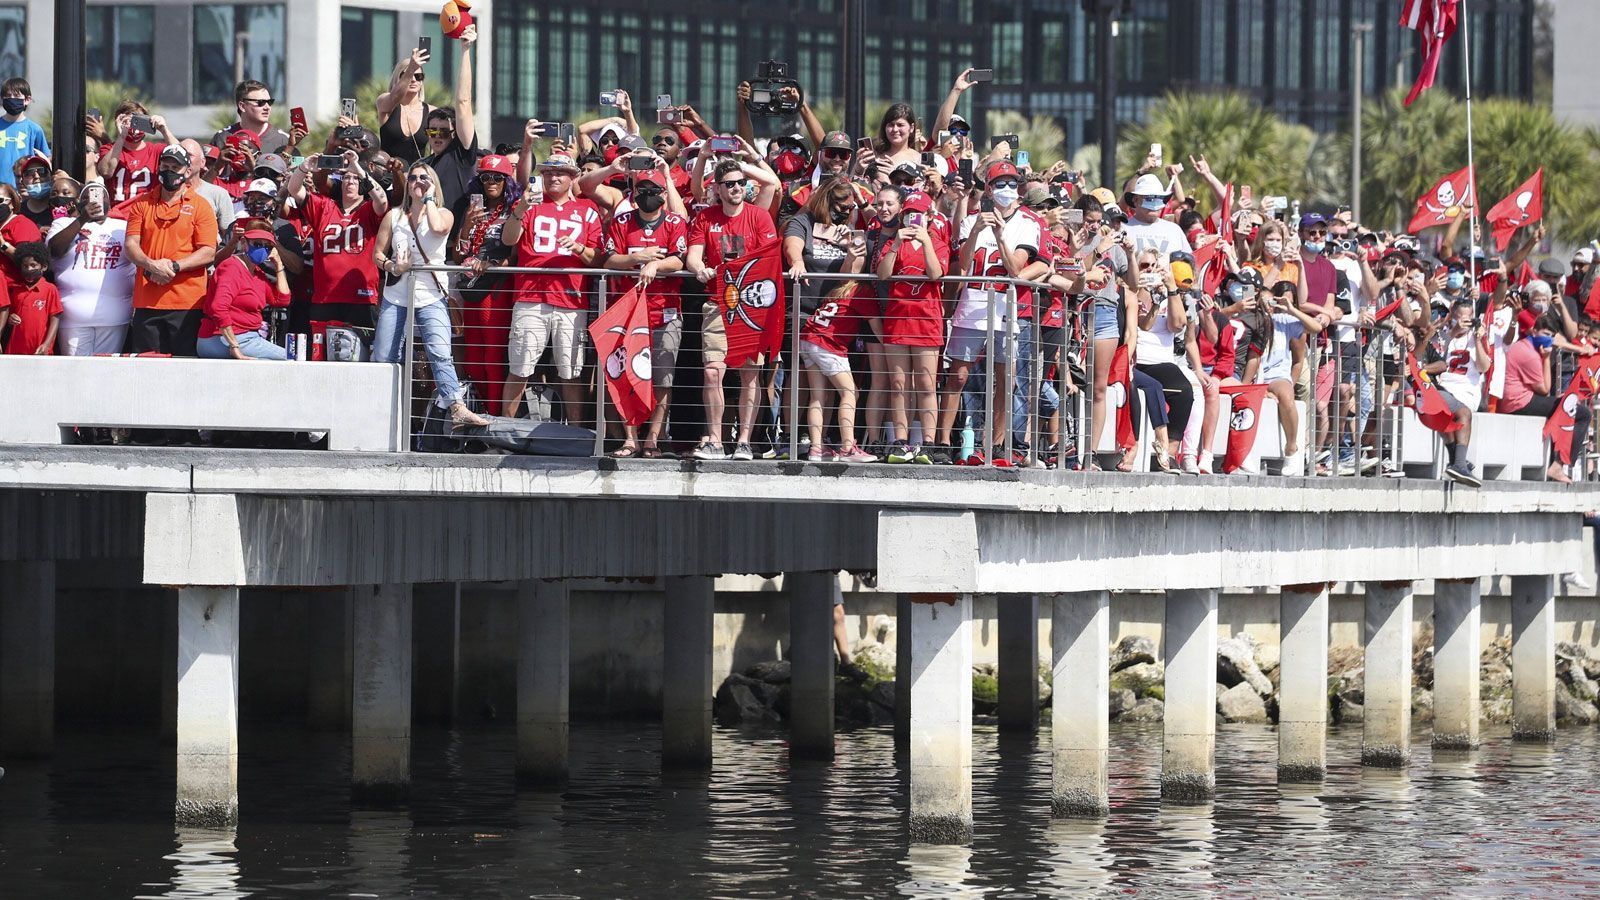 
                <strong>Die Bootsparade der Buccaneers nach dem Super-Bowl-Triumph</strong><br>
                Am Ufer verfolgen die Fans die Tour ihres Teams. Wohl dem, der früh genug vor Ort ist.
              